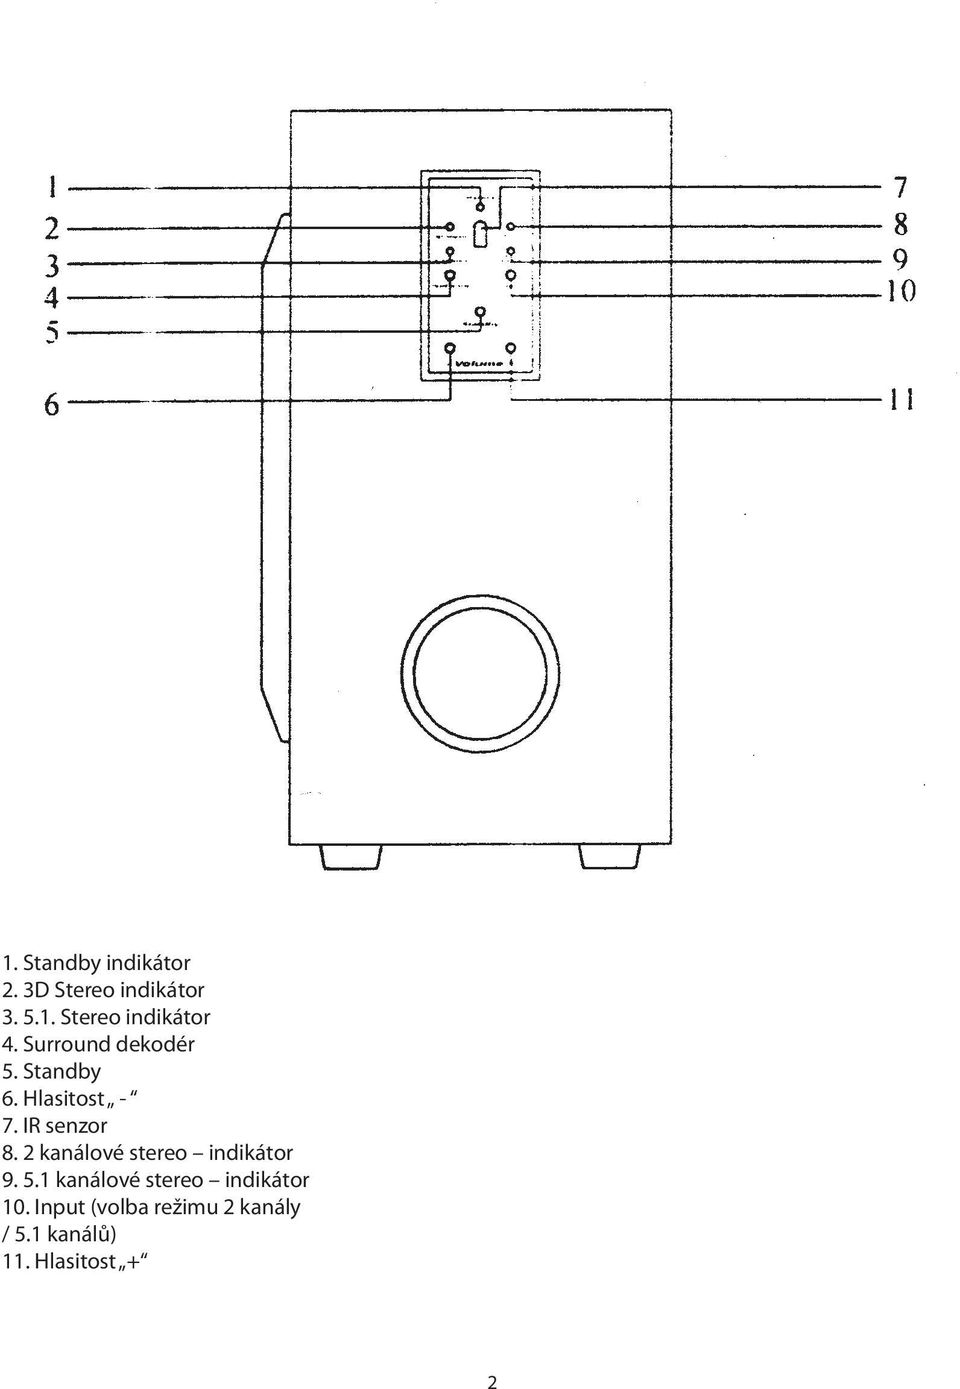 2 kanálové stereo indikátor 9. 5.1 kanálové stereo indikátor 10.